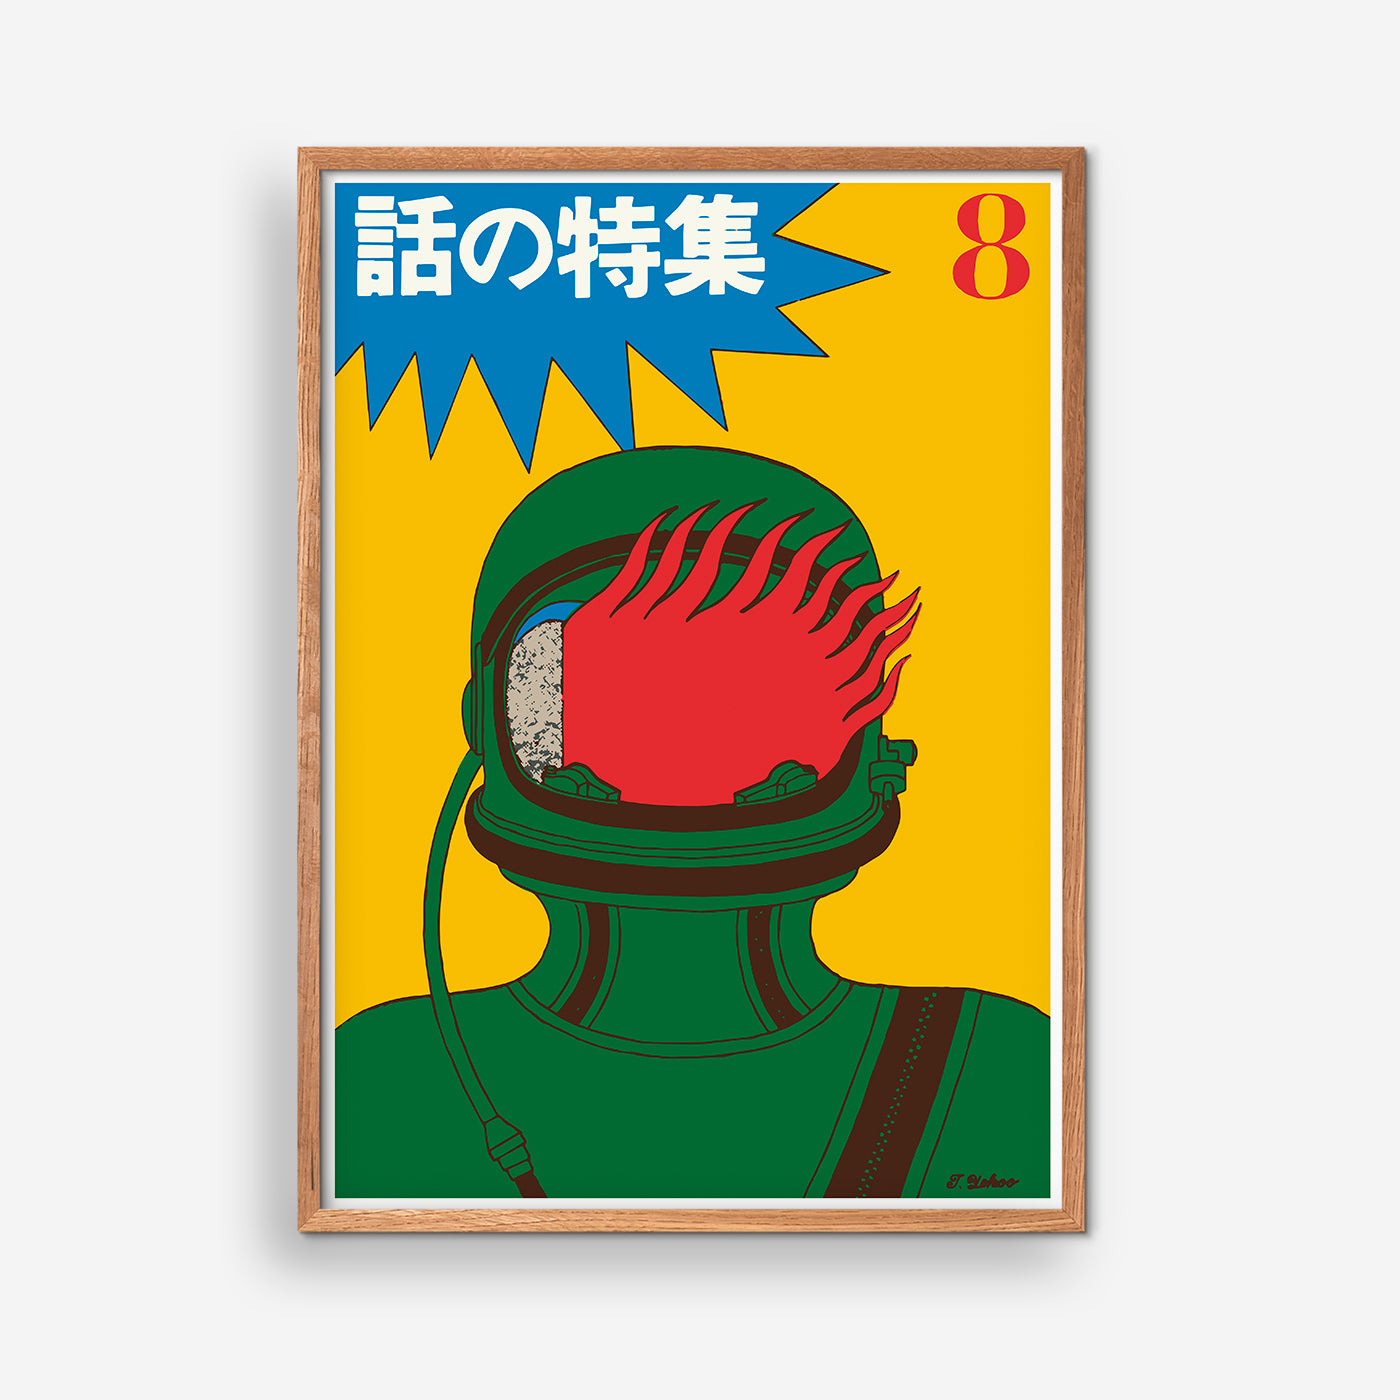 Green Man - Japanese Advertising Art